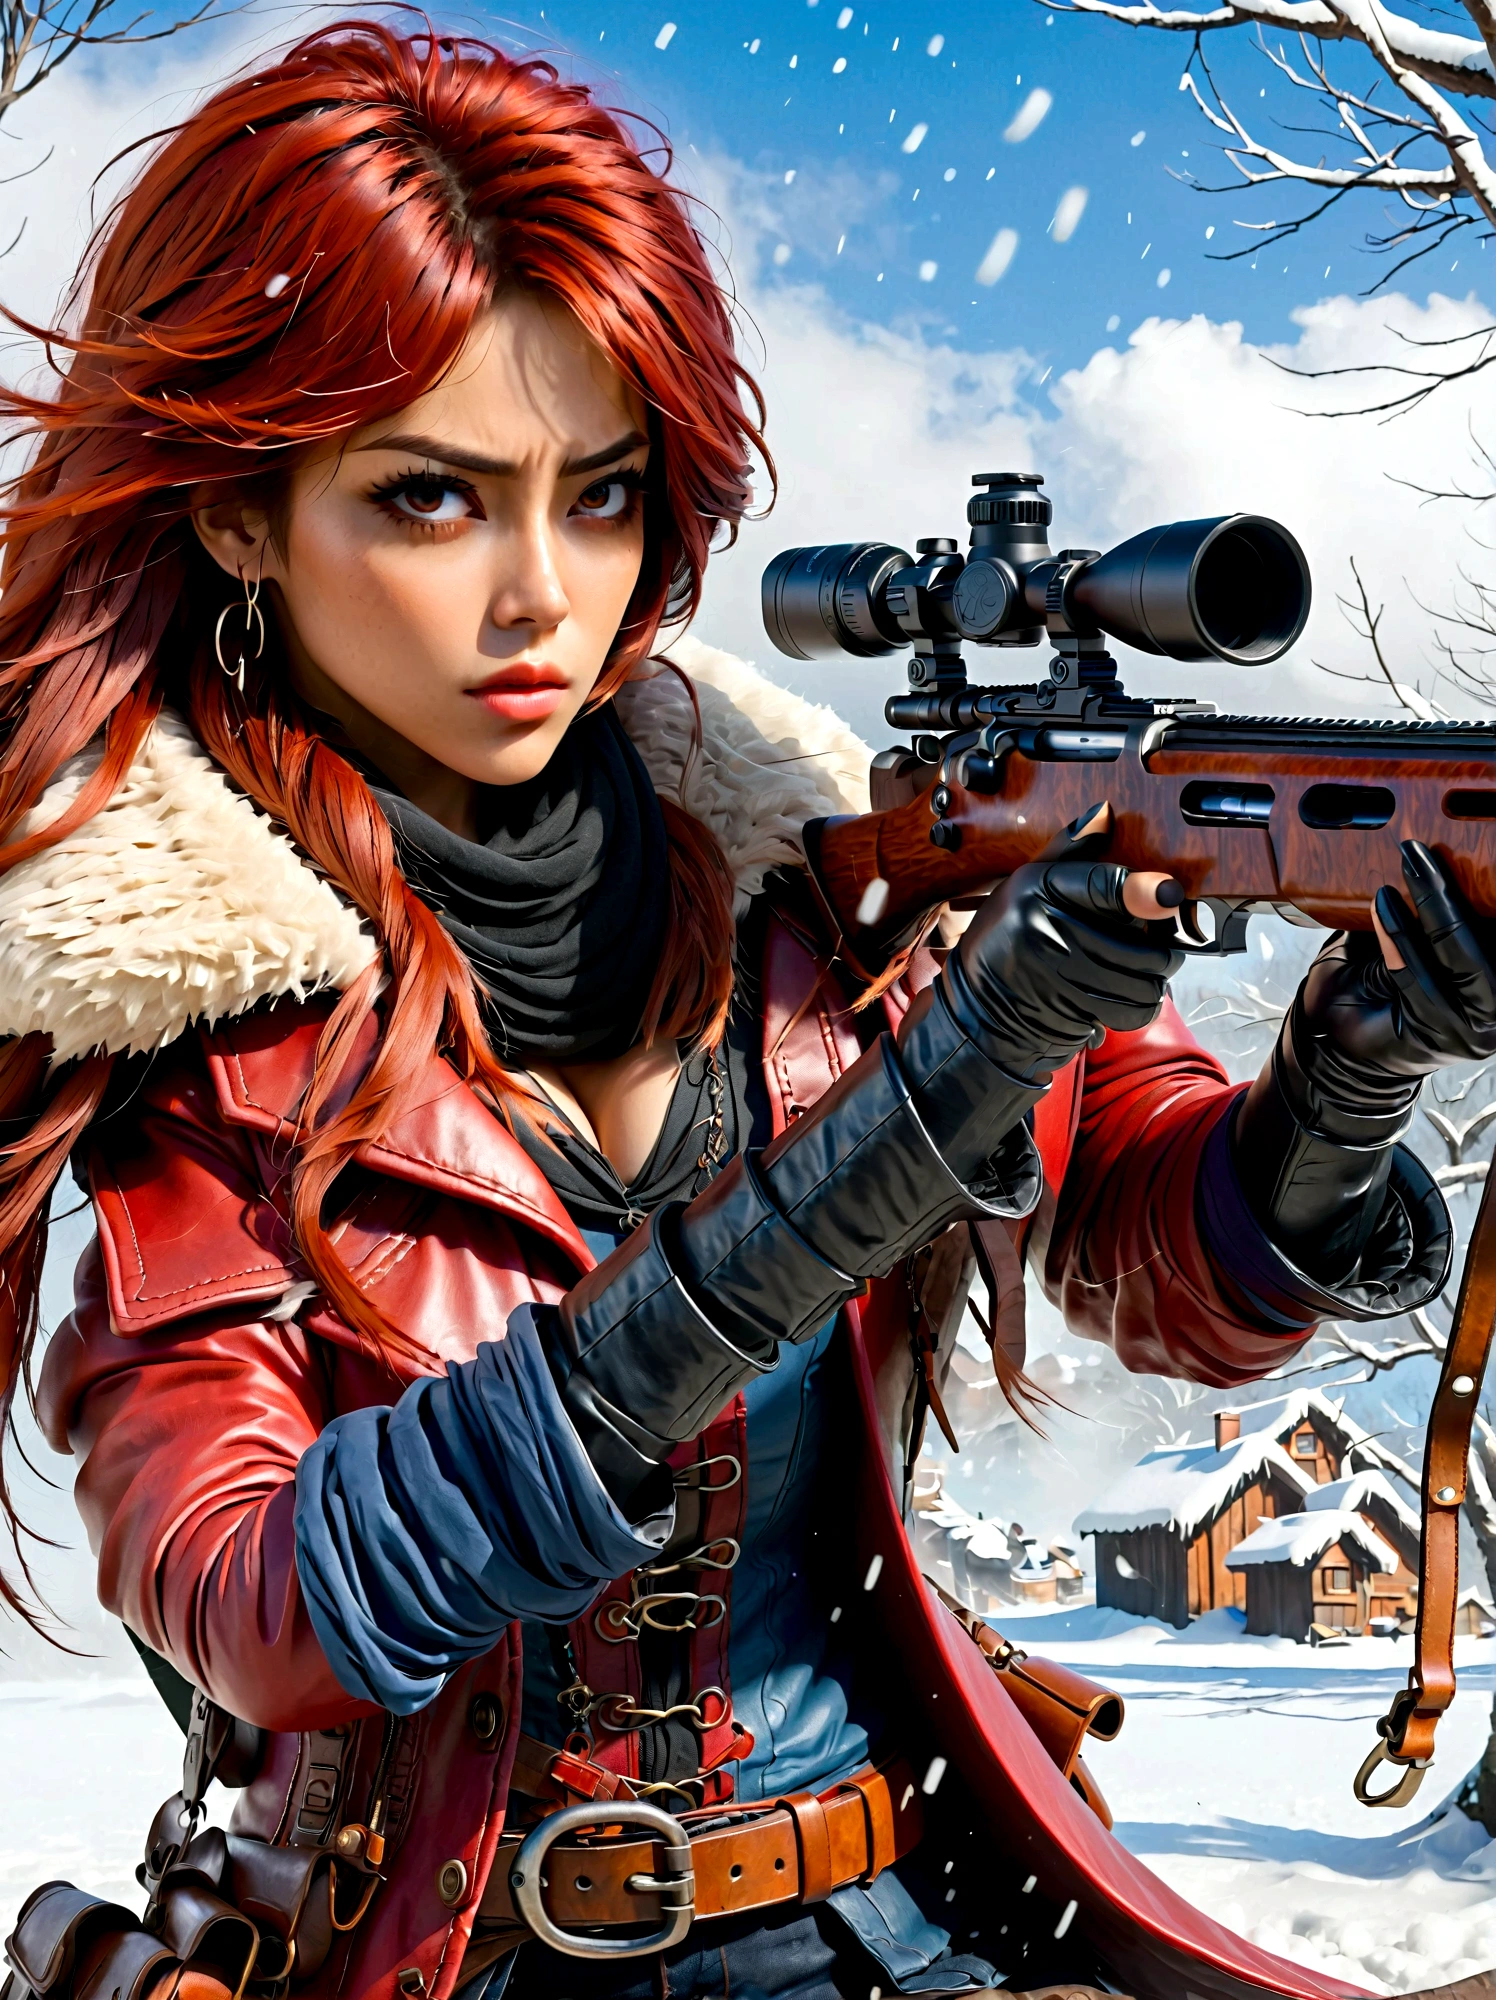 소총을 들고 있는 소녀, (역겨운 표정:1.5), 눈싸움 자세, 동쪽, 칼날과 영혼, 잉크 스타일, 긴 빨간 머리, 가죽 및 모피 코트, 추운, 삽화, 3D, 4K, 상세한, 현실적인